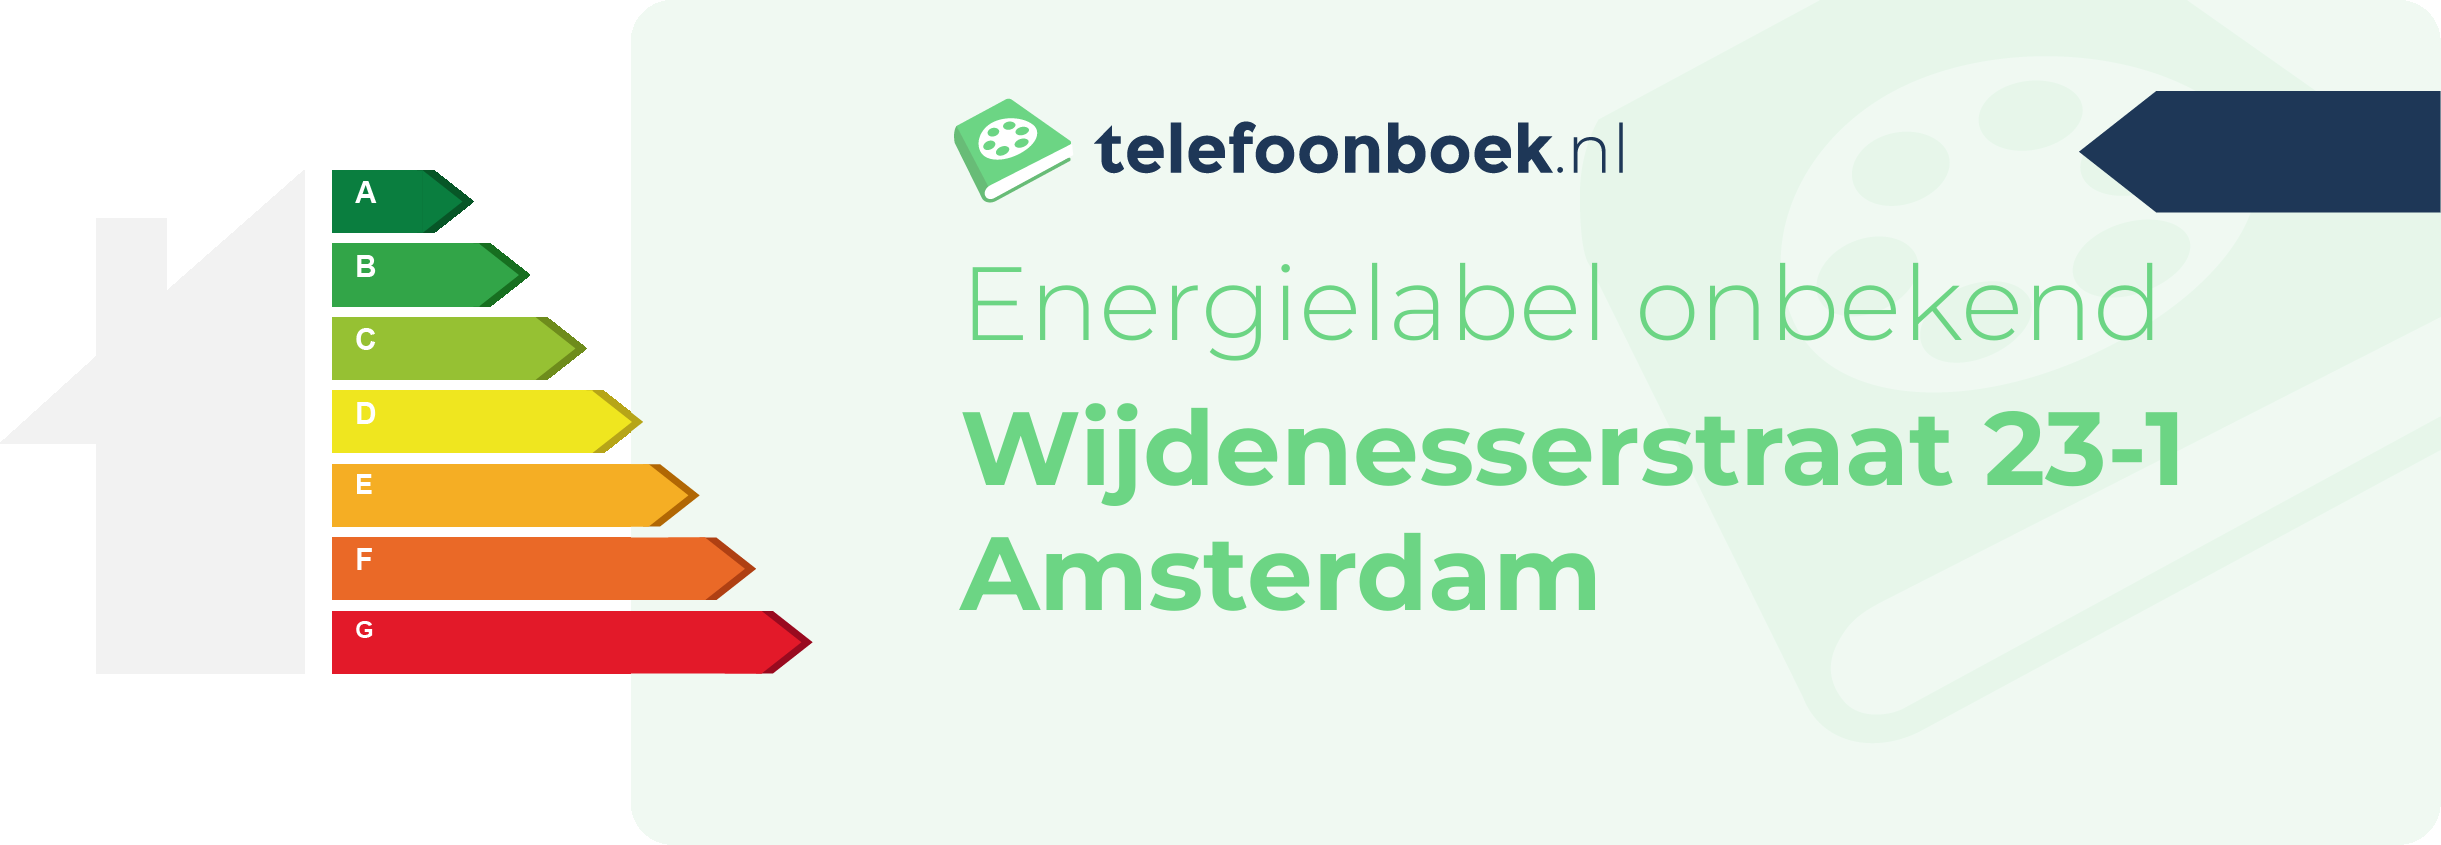 Energielabel Wijdenesserstraat 23-1 Amsterdam